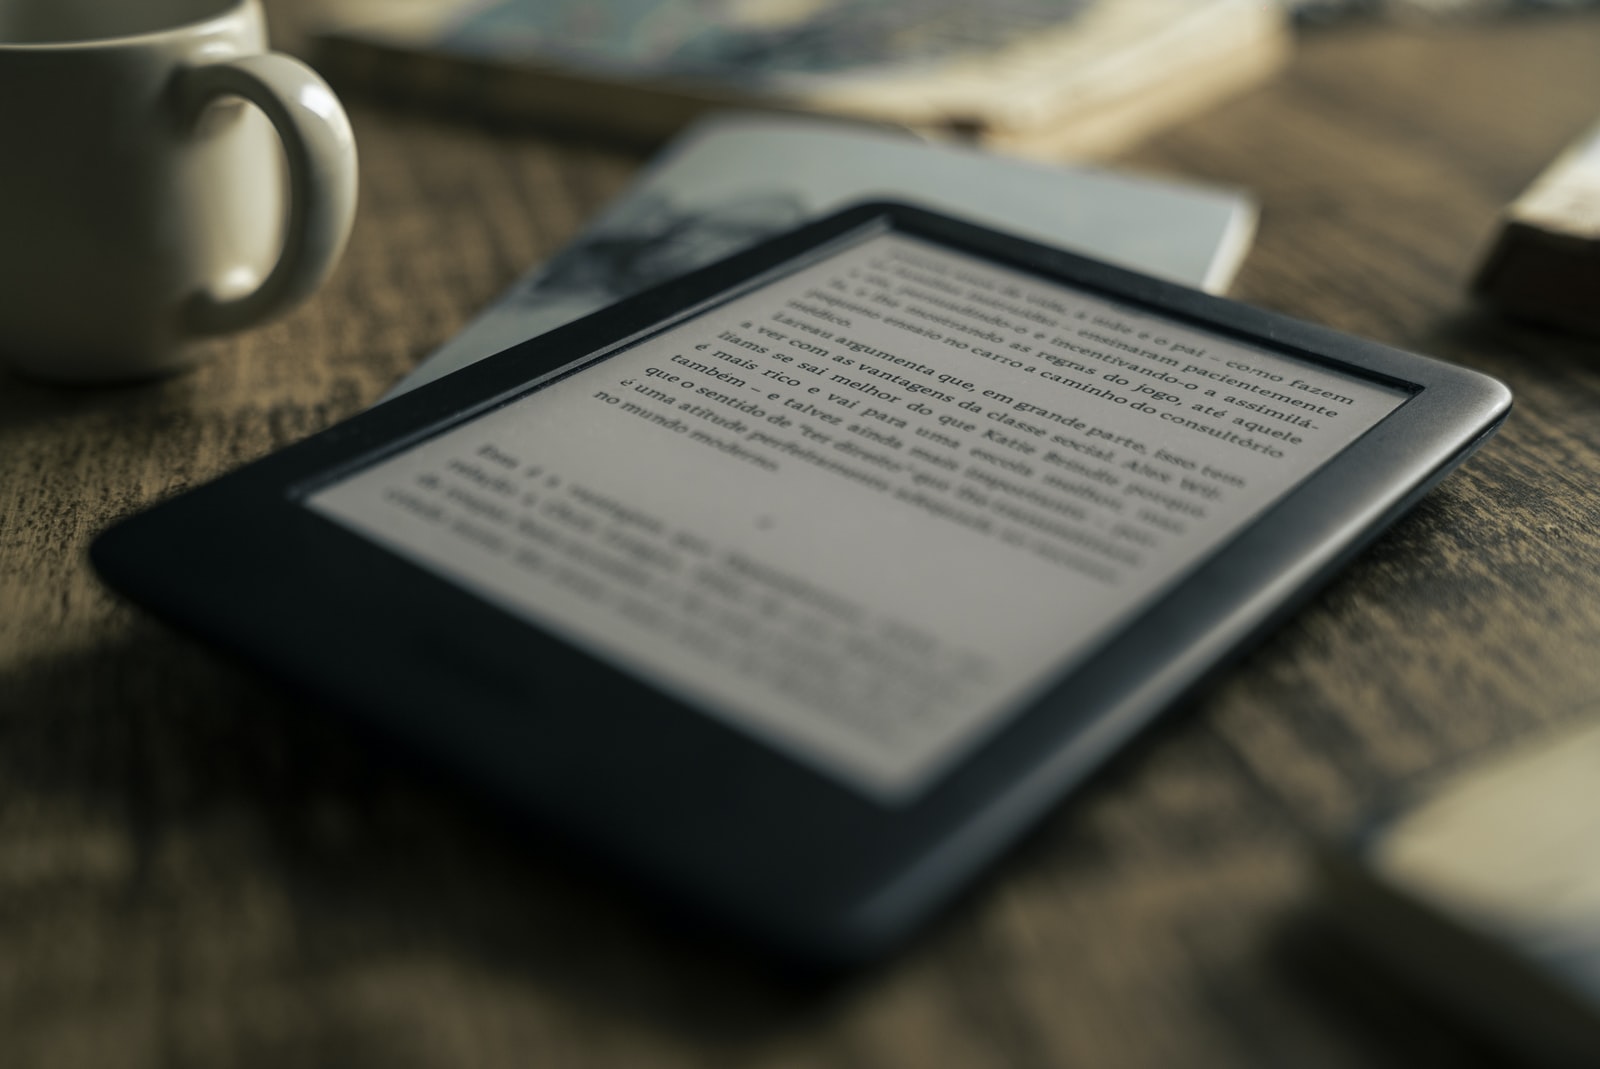 Amazon Kindle e-reader featured